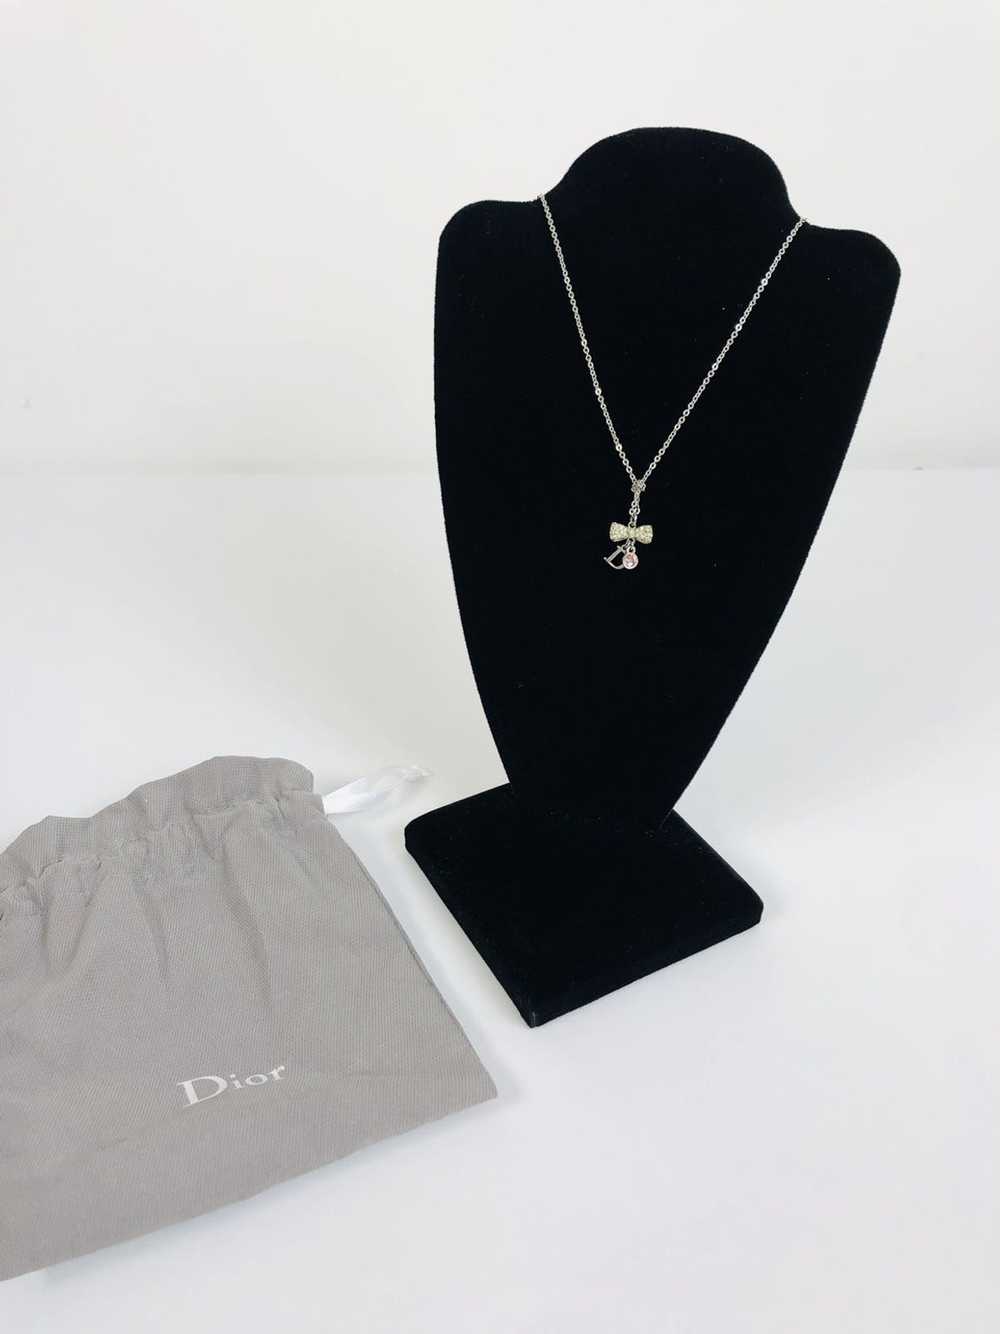 Dior Dior bowtie necklace - image 1